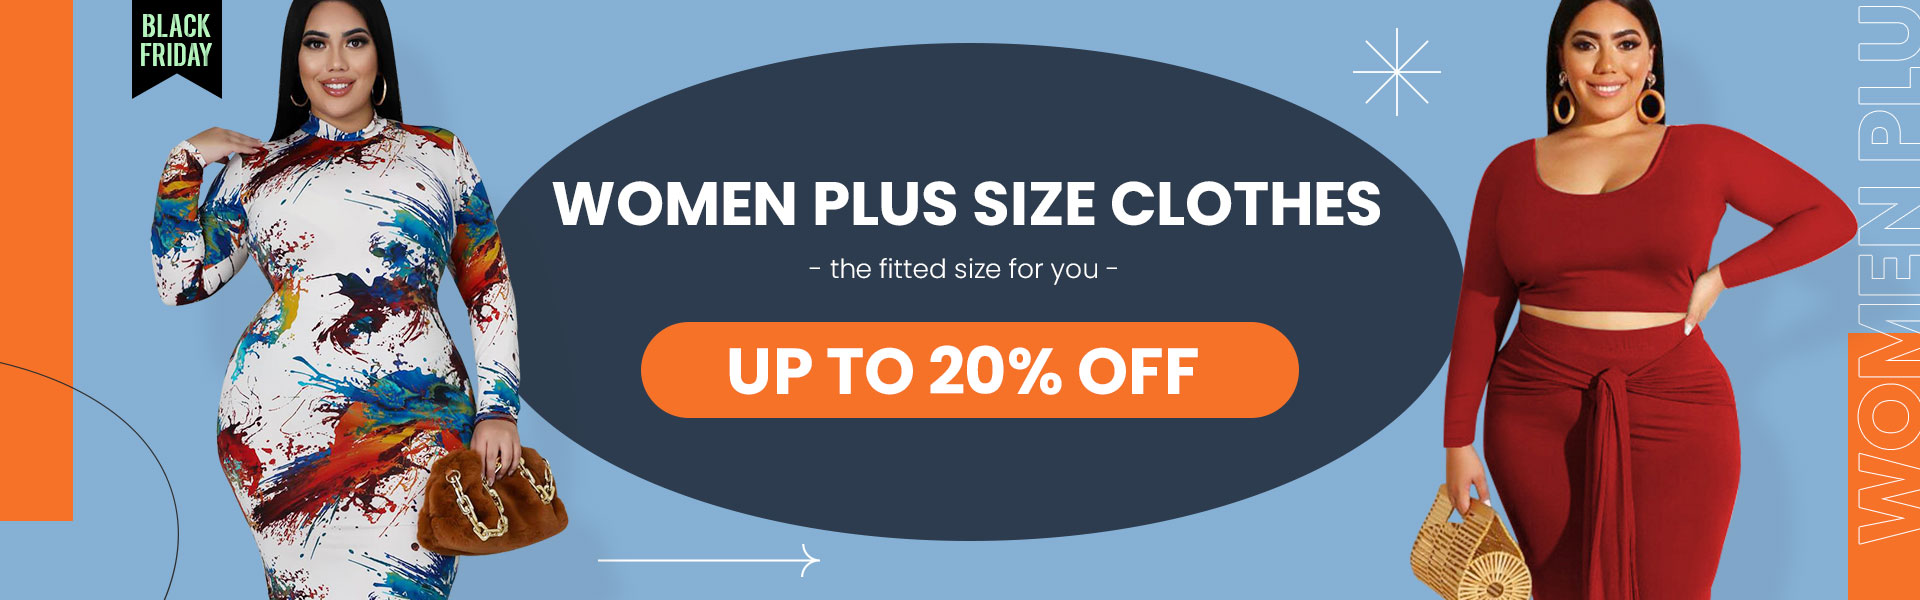 Women Plus Size Clothes